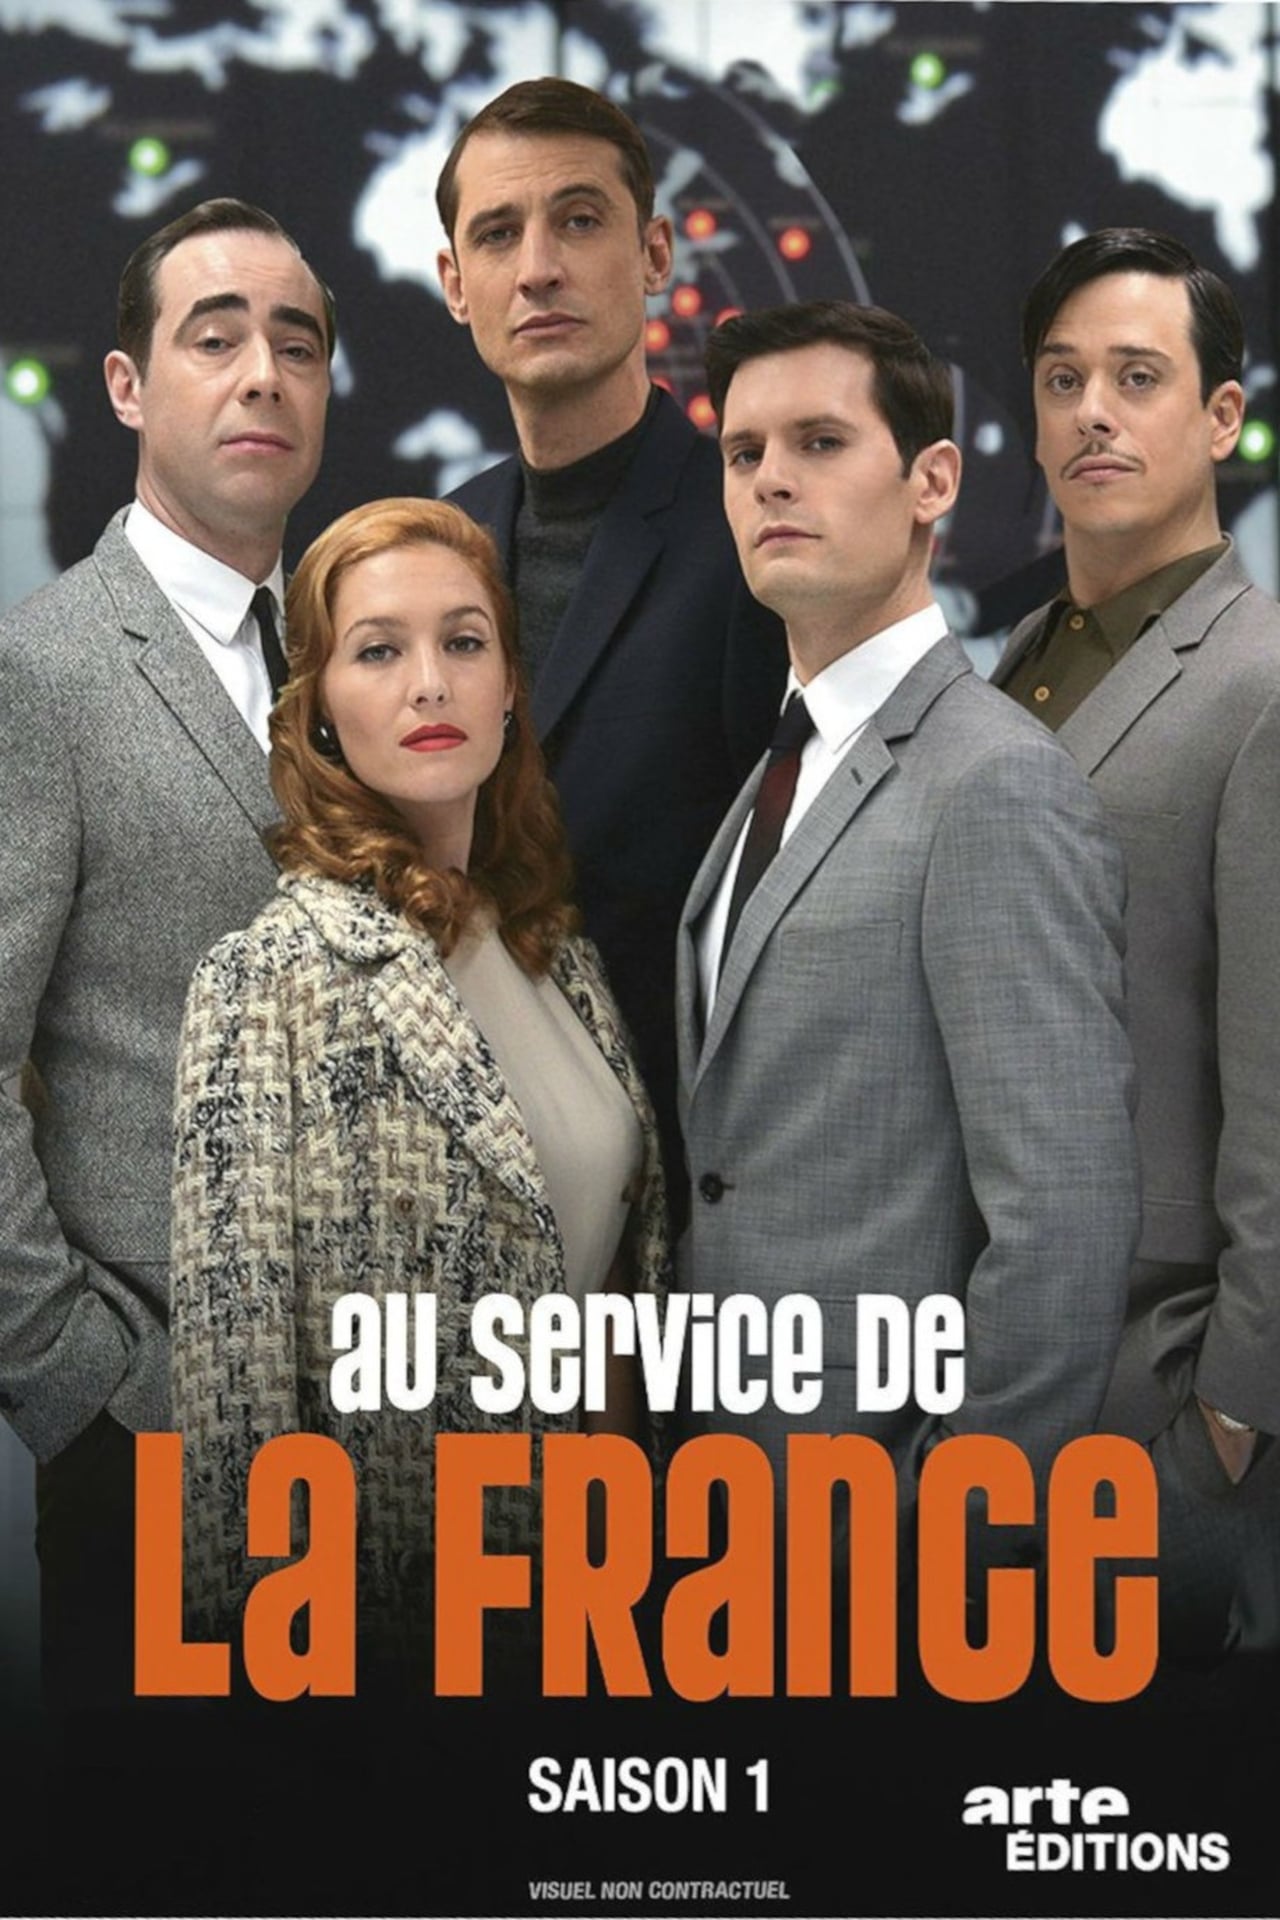 A Very Secret Service (2015)